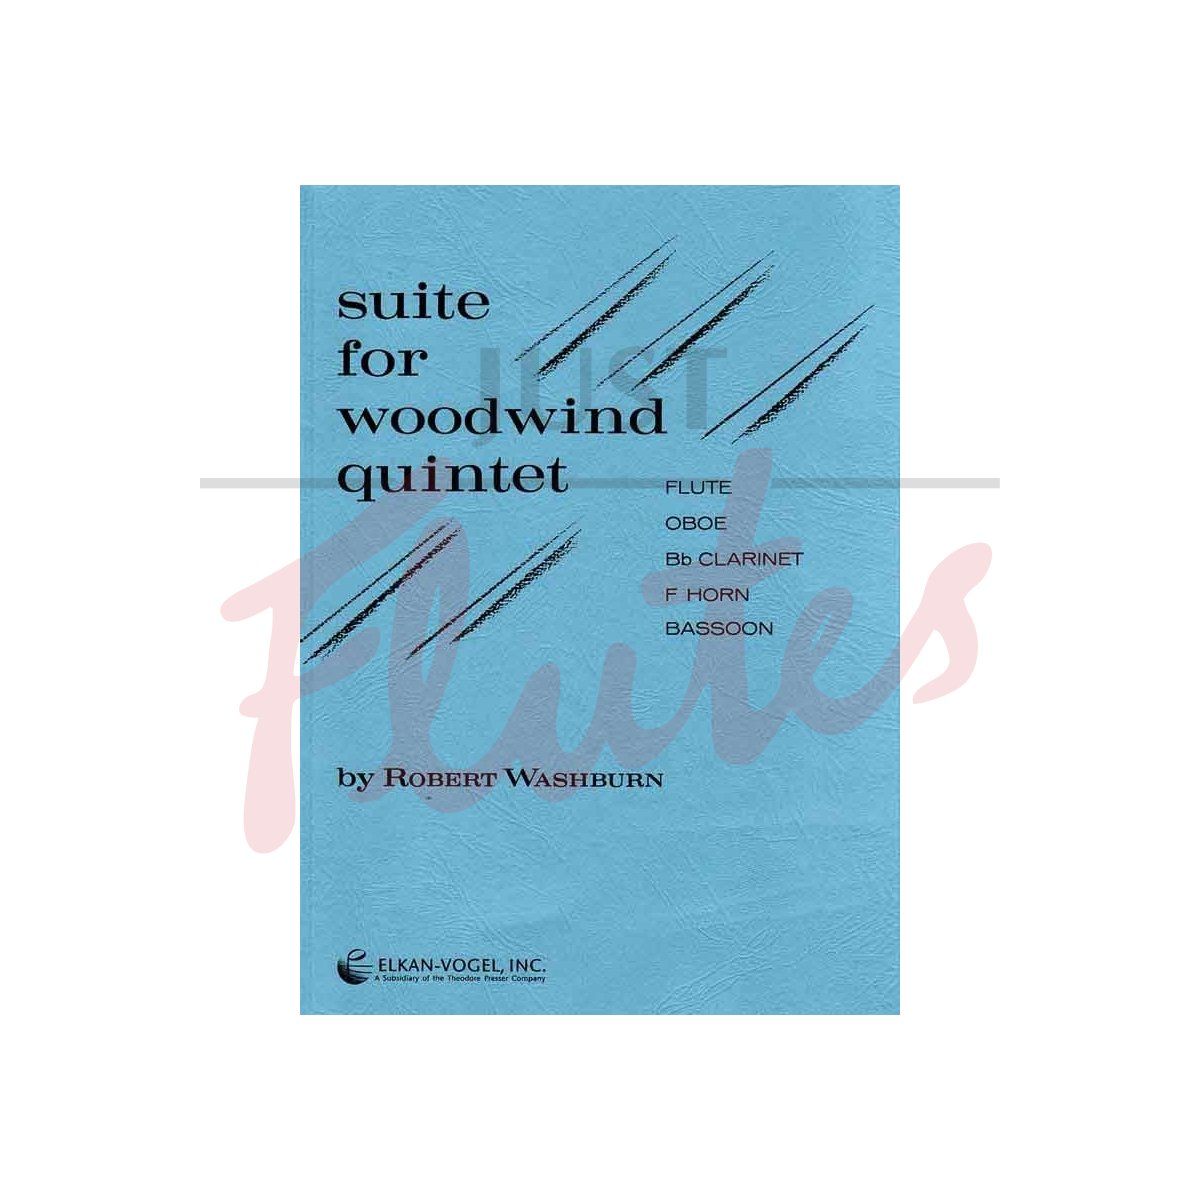 Suite for Woodwind Quintet